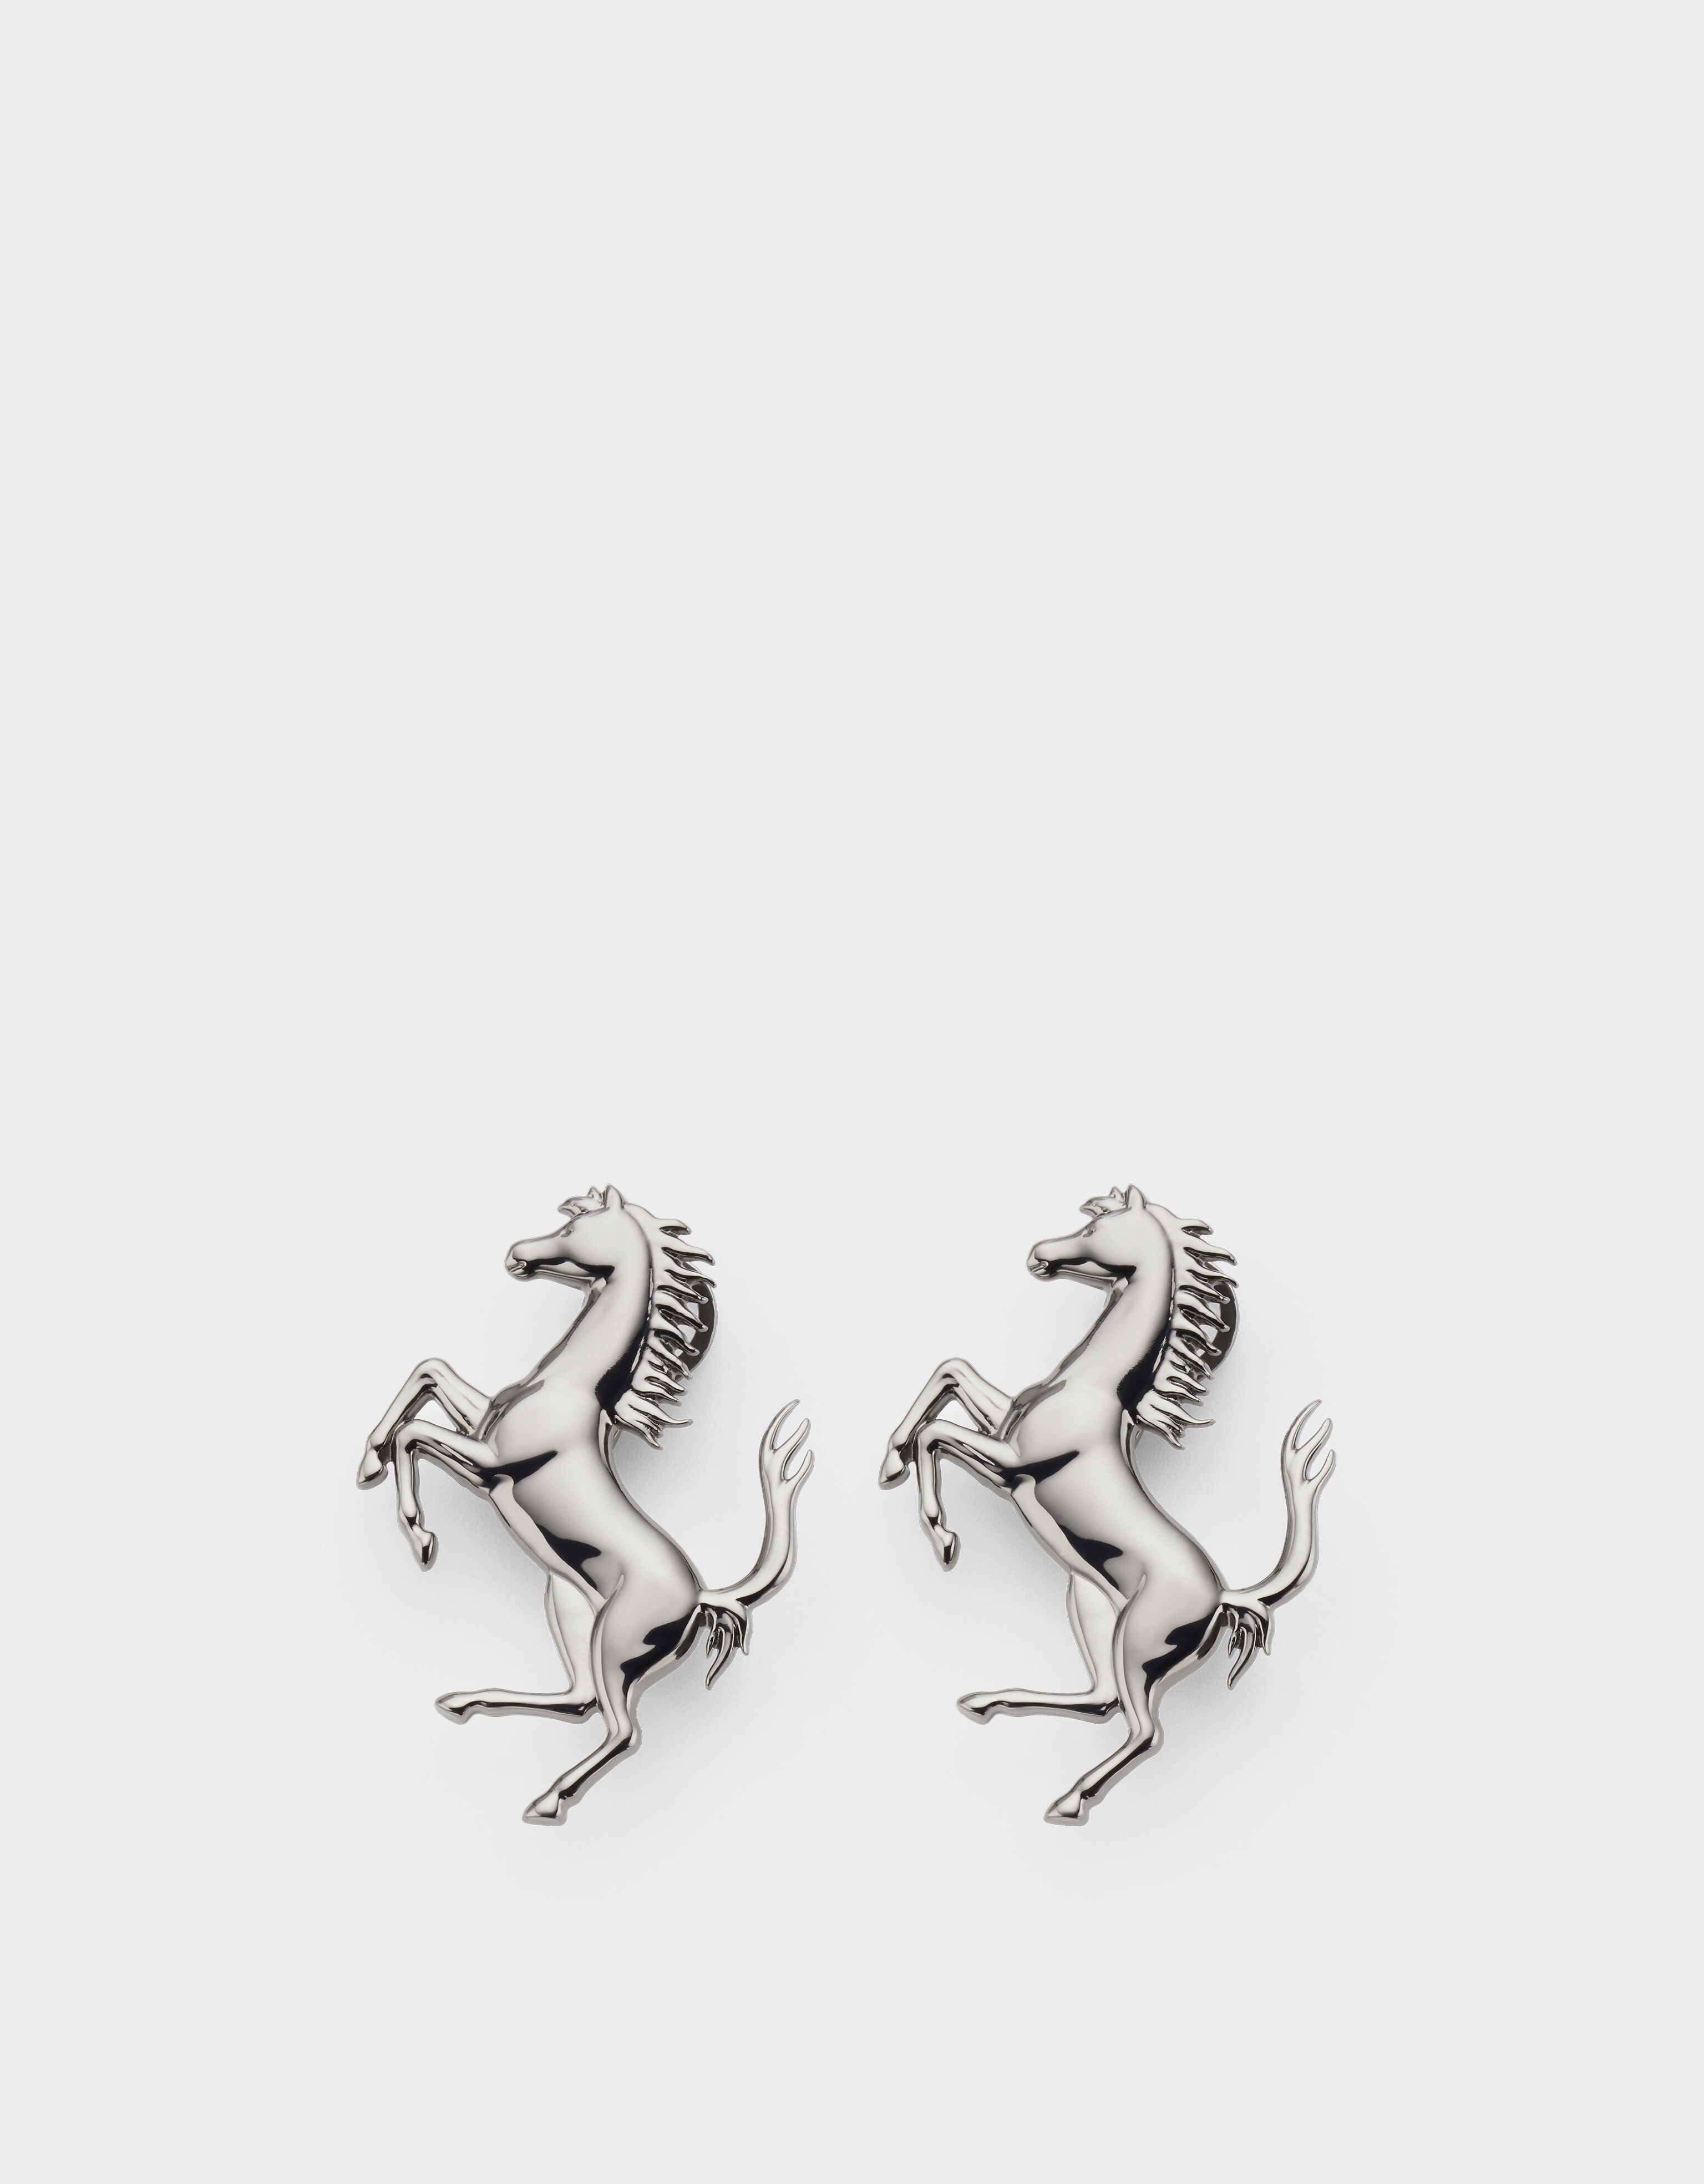 Ferrari Prancing Horse earrings Dark Grey 21429f